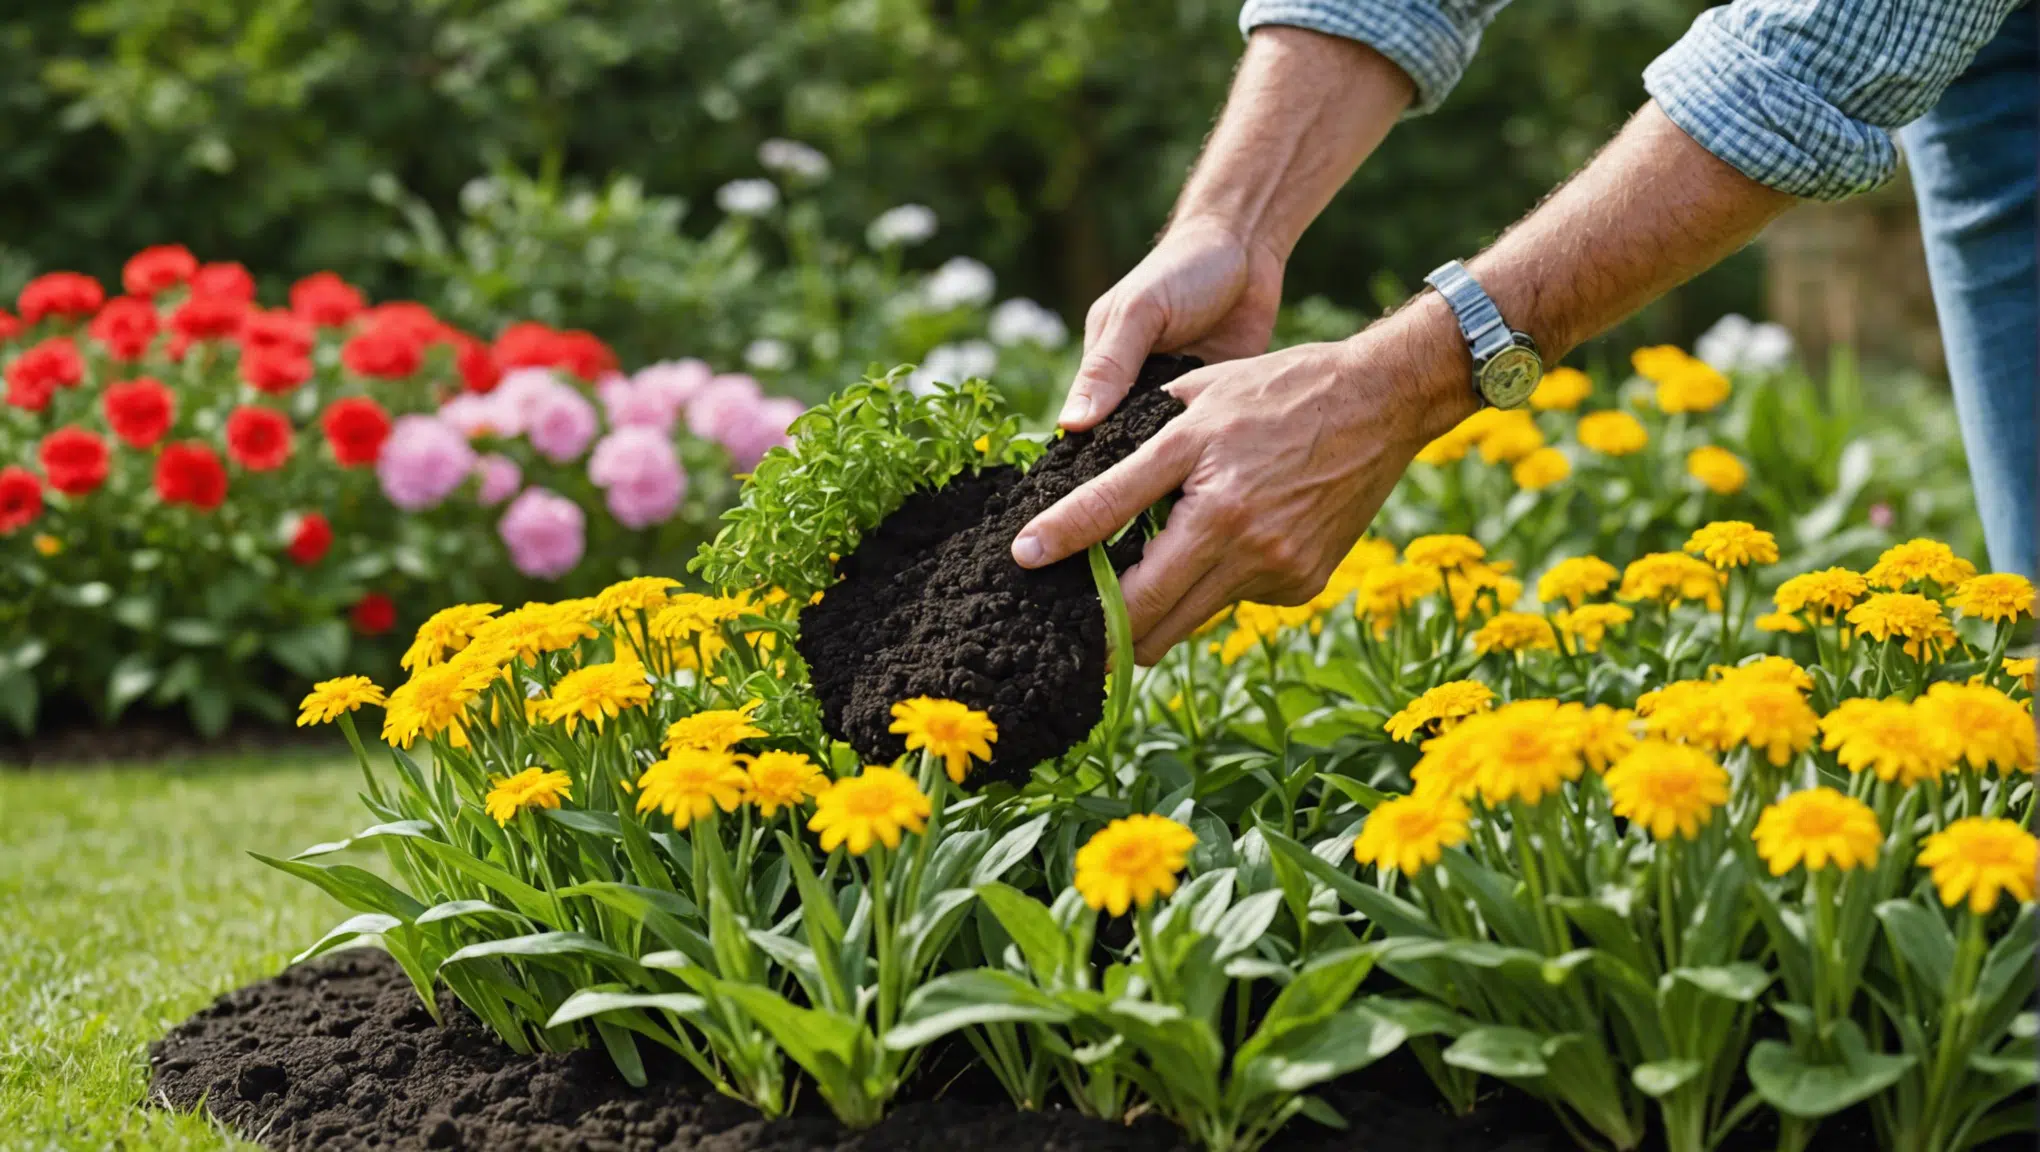 découvrez les meilleurs engrais naturels pour nourrir votre jardin de manière écologique et durable. apprenez à enrichir votre sol en respectant l'environnement.